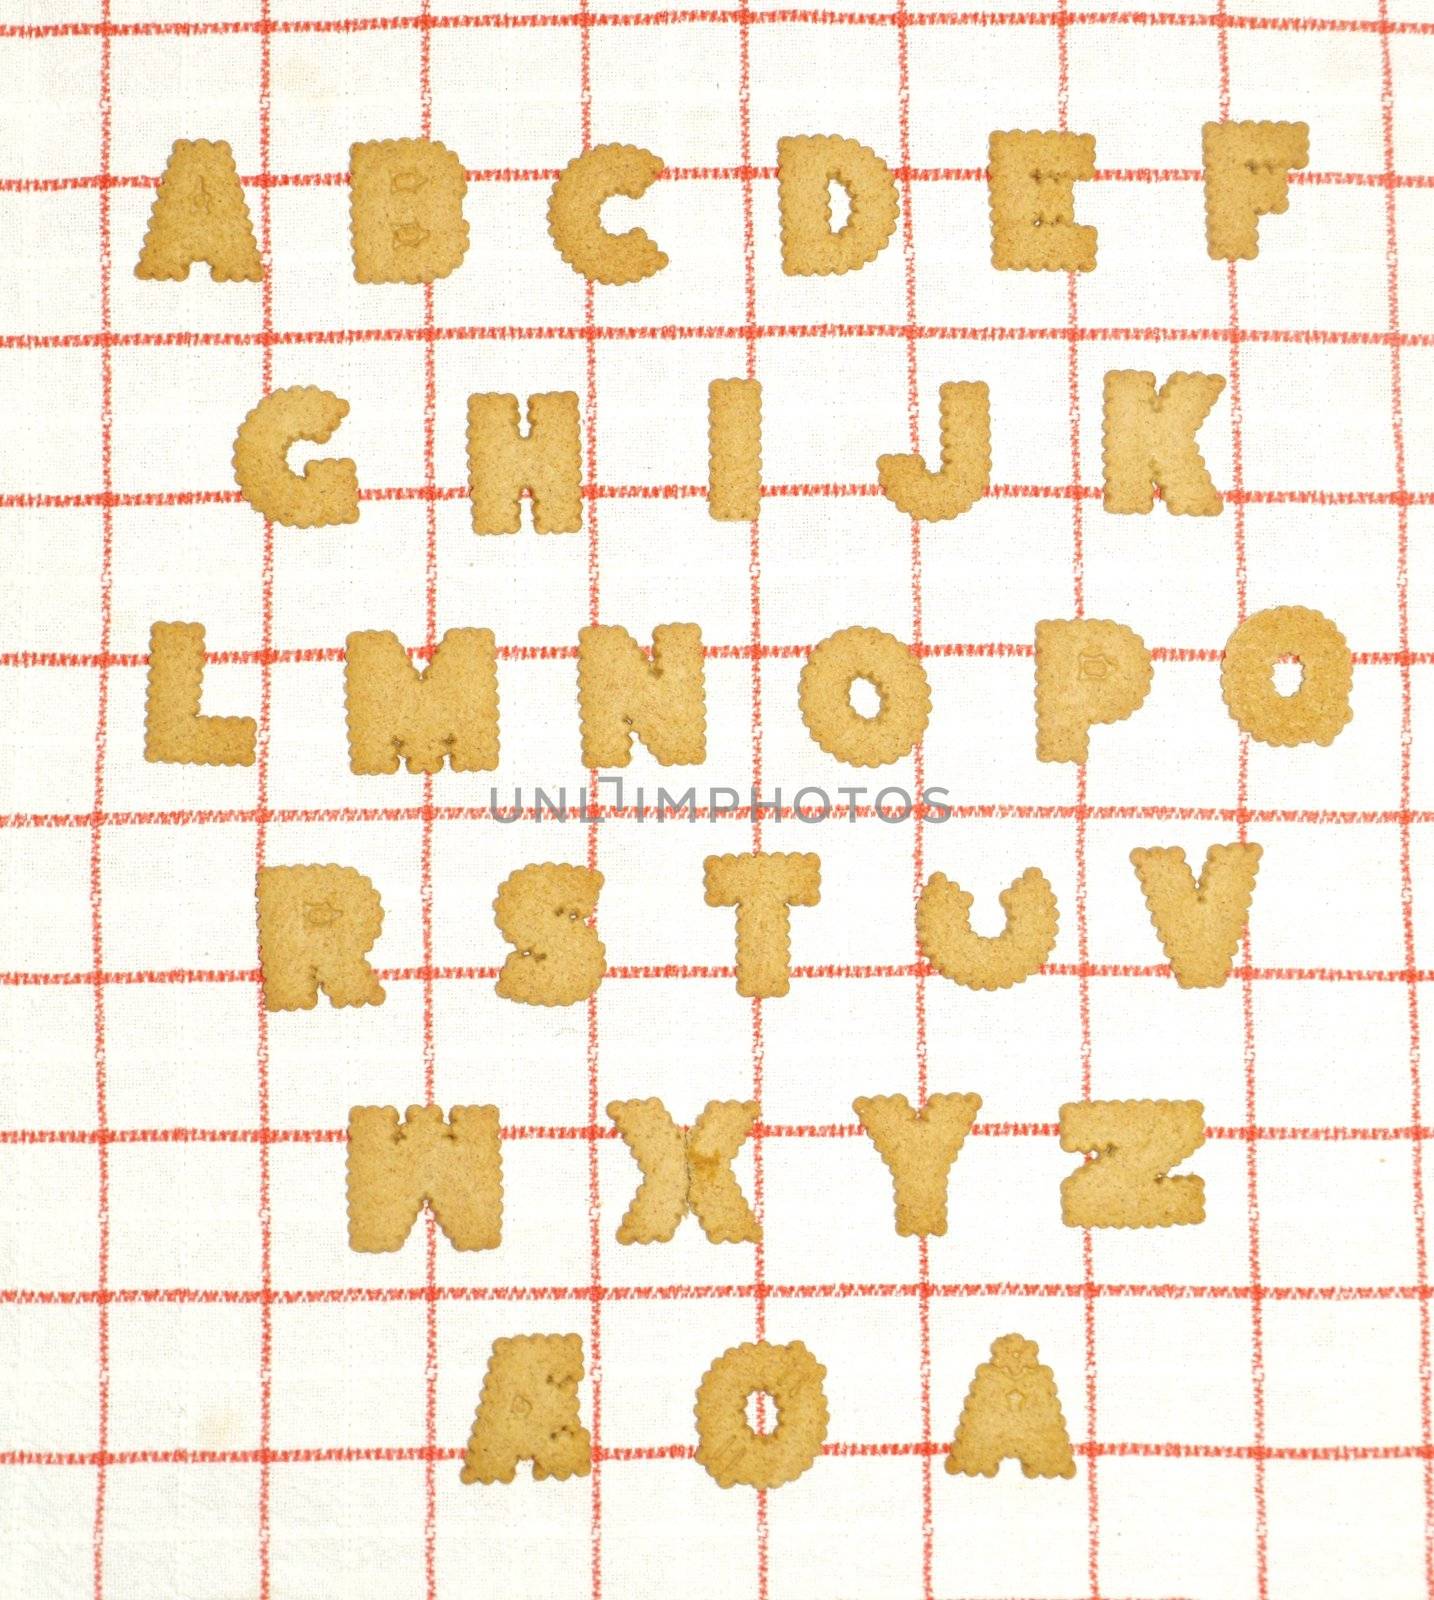 Norwegian alphabet written with bisquits